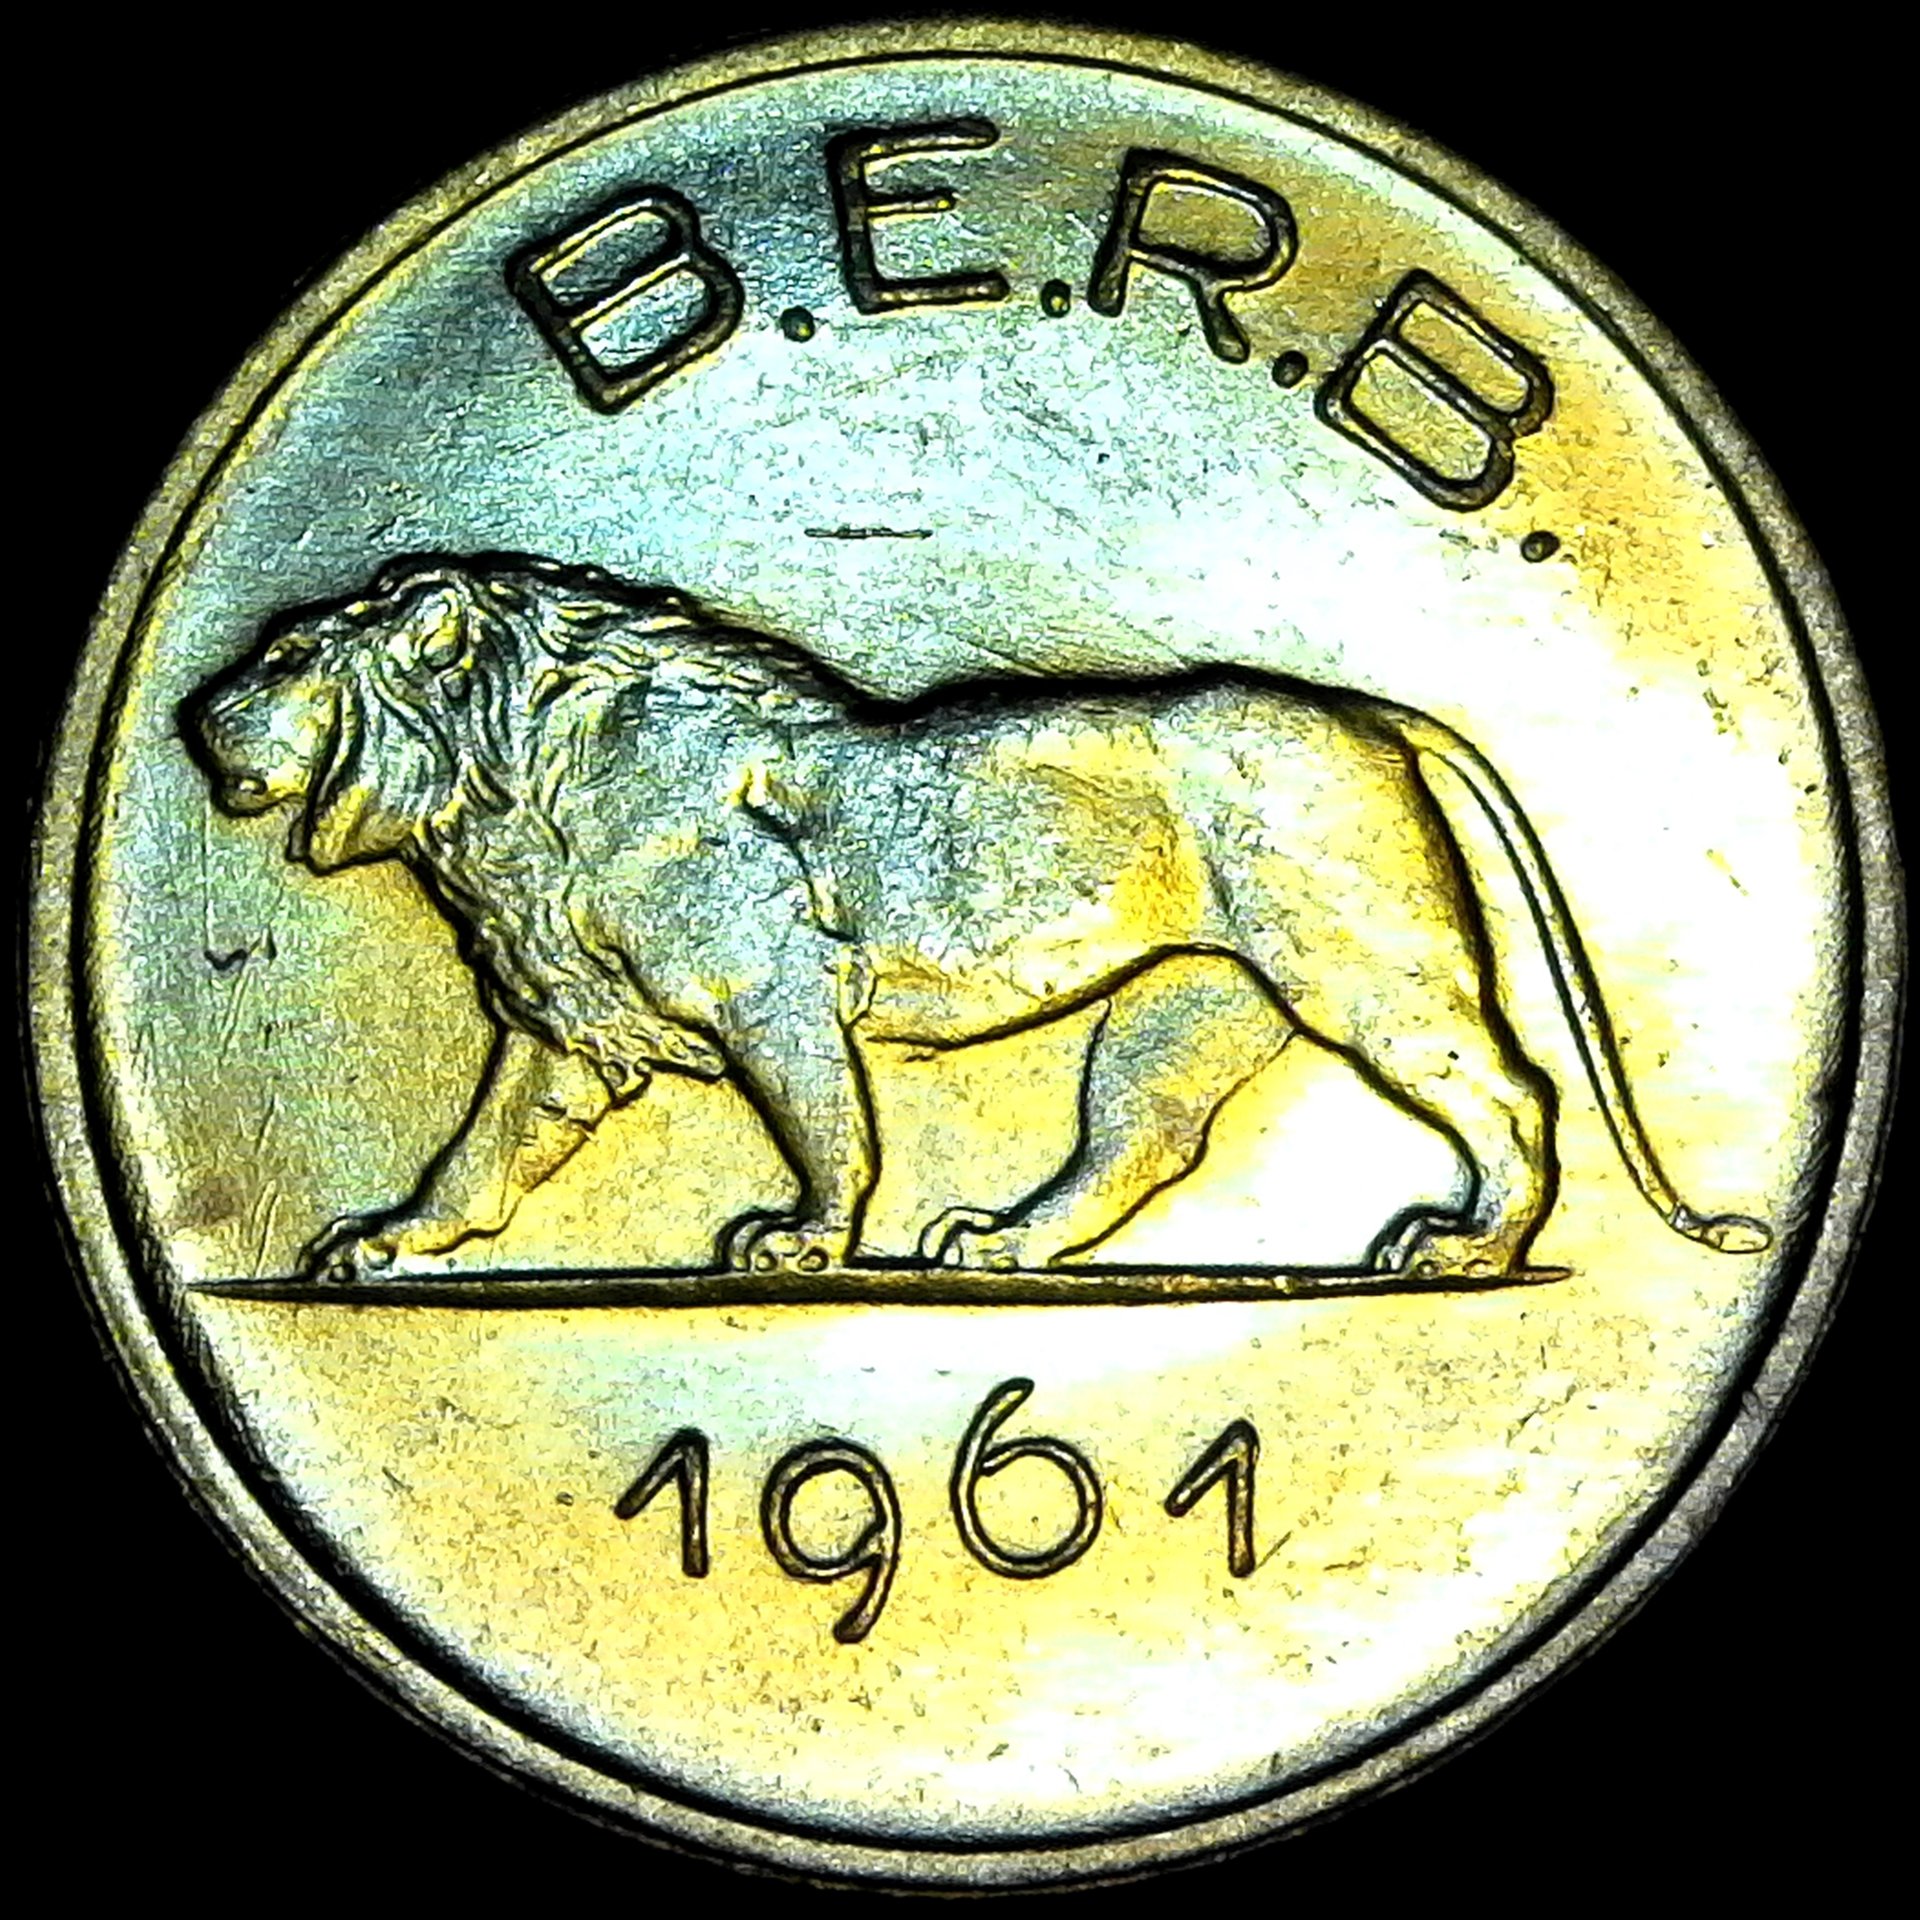 Rwanda Burundi 1 Franc 1961 obverse.jpg